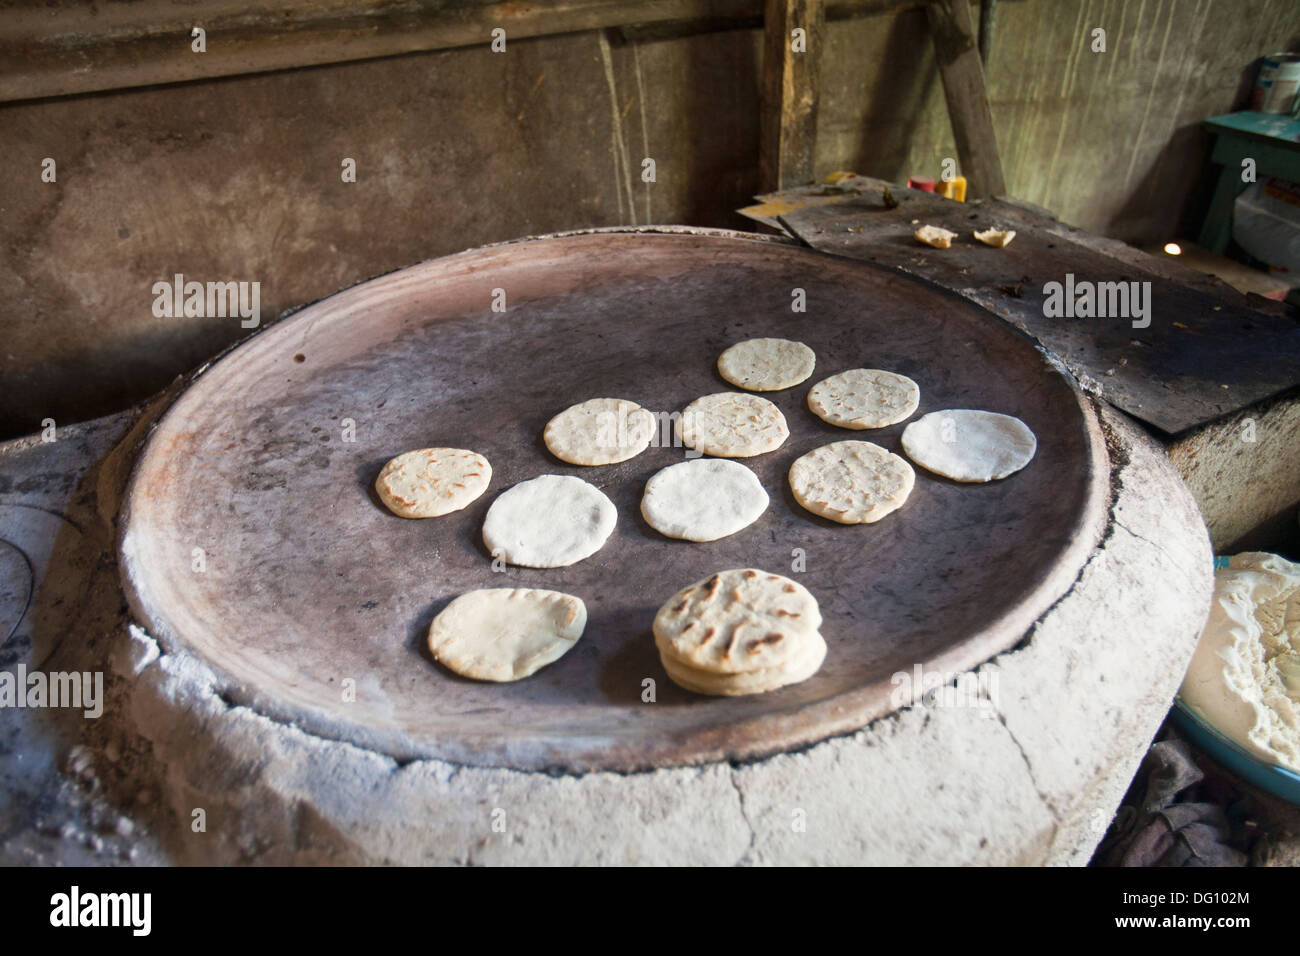 Así se preparan las tortillas de maíz en comal de barro con leña.  #tortillasdemaiz #oaxaca 